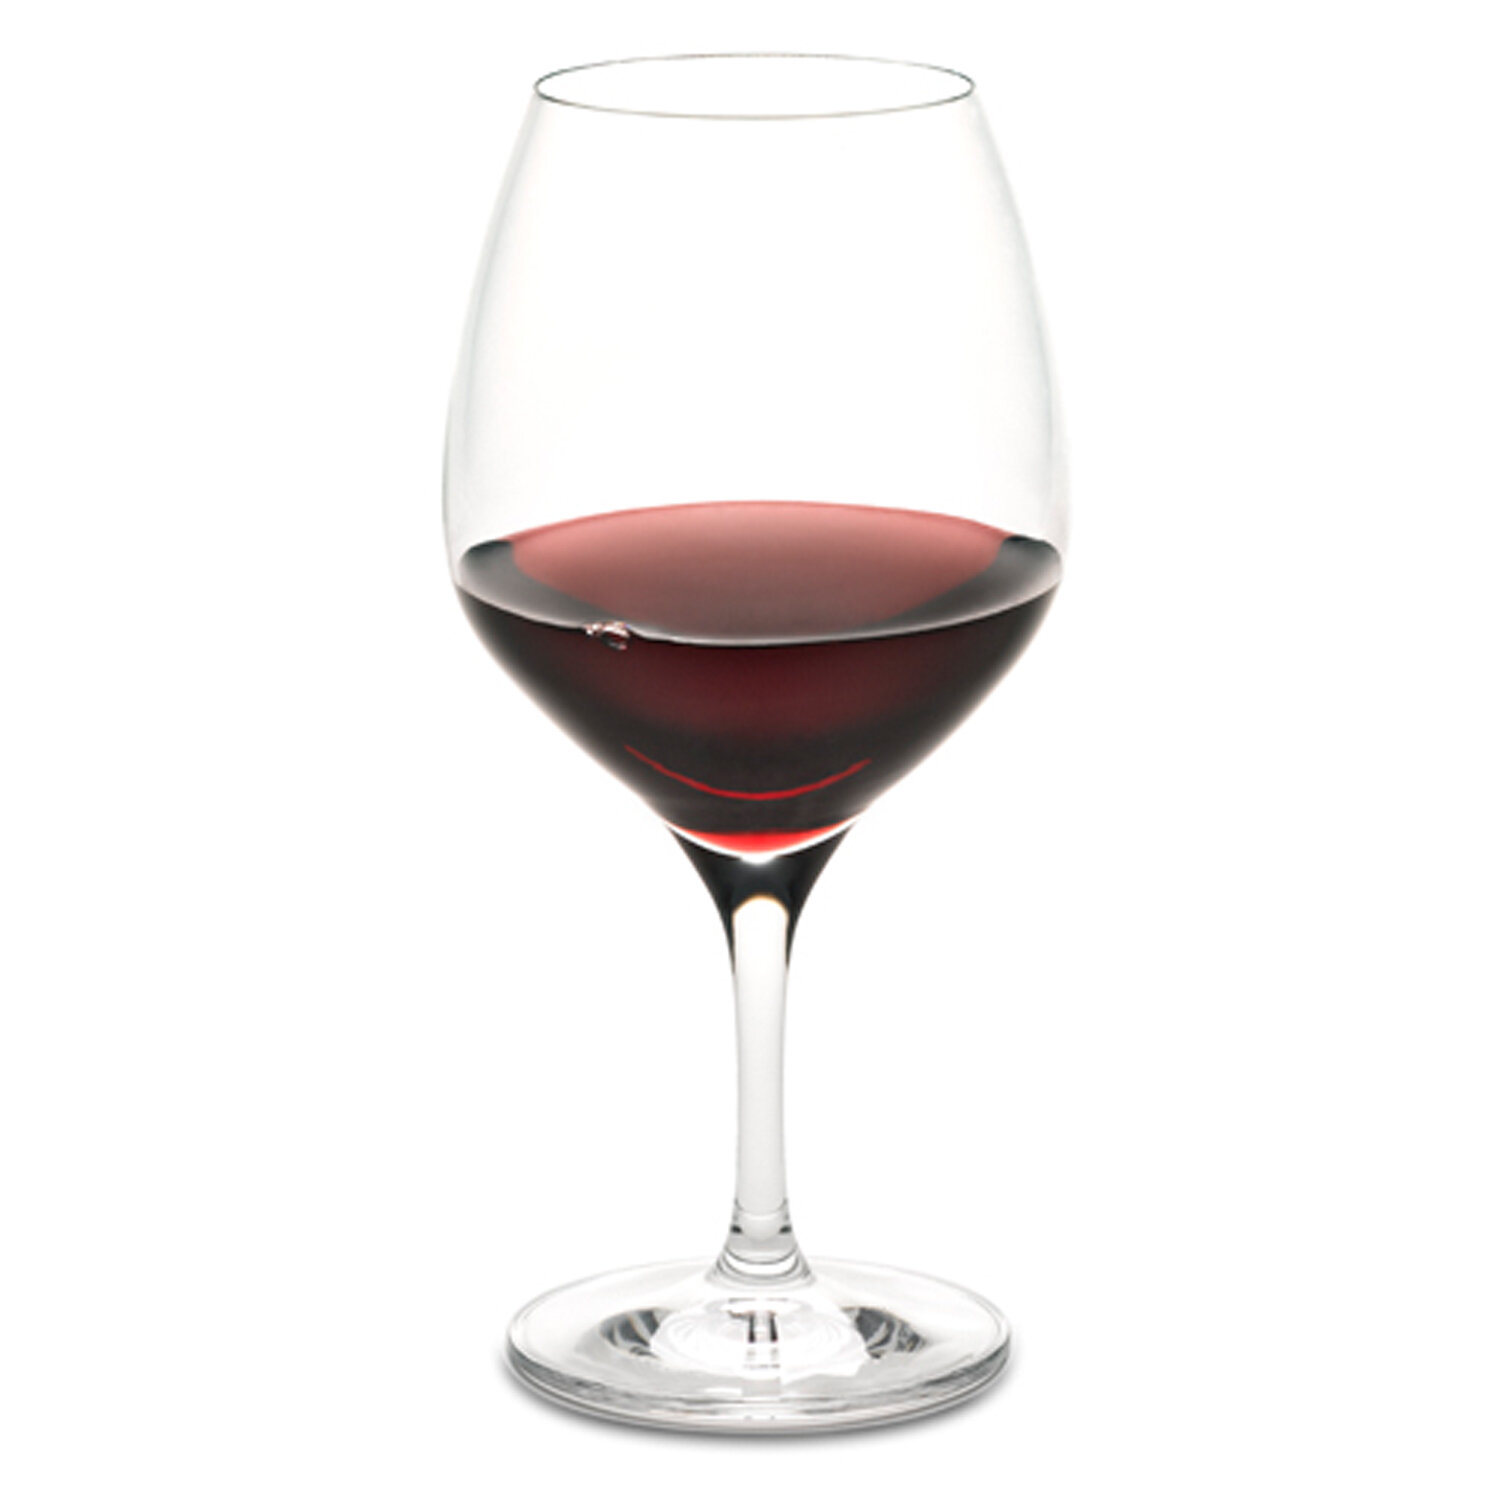 Spiegelau Definition Universal Wine Glasses Set of 2 - 19 Ounces